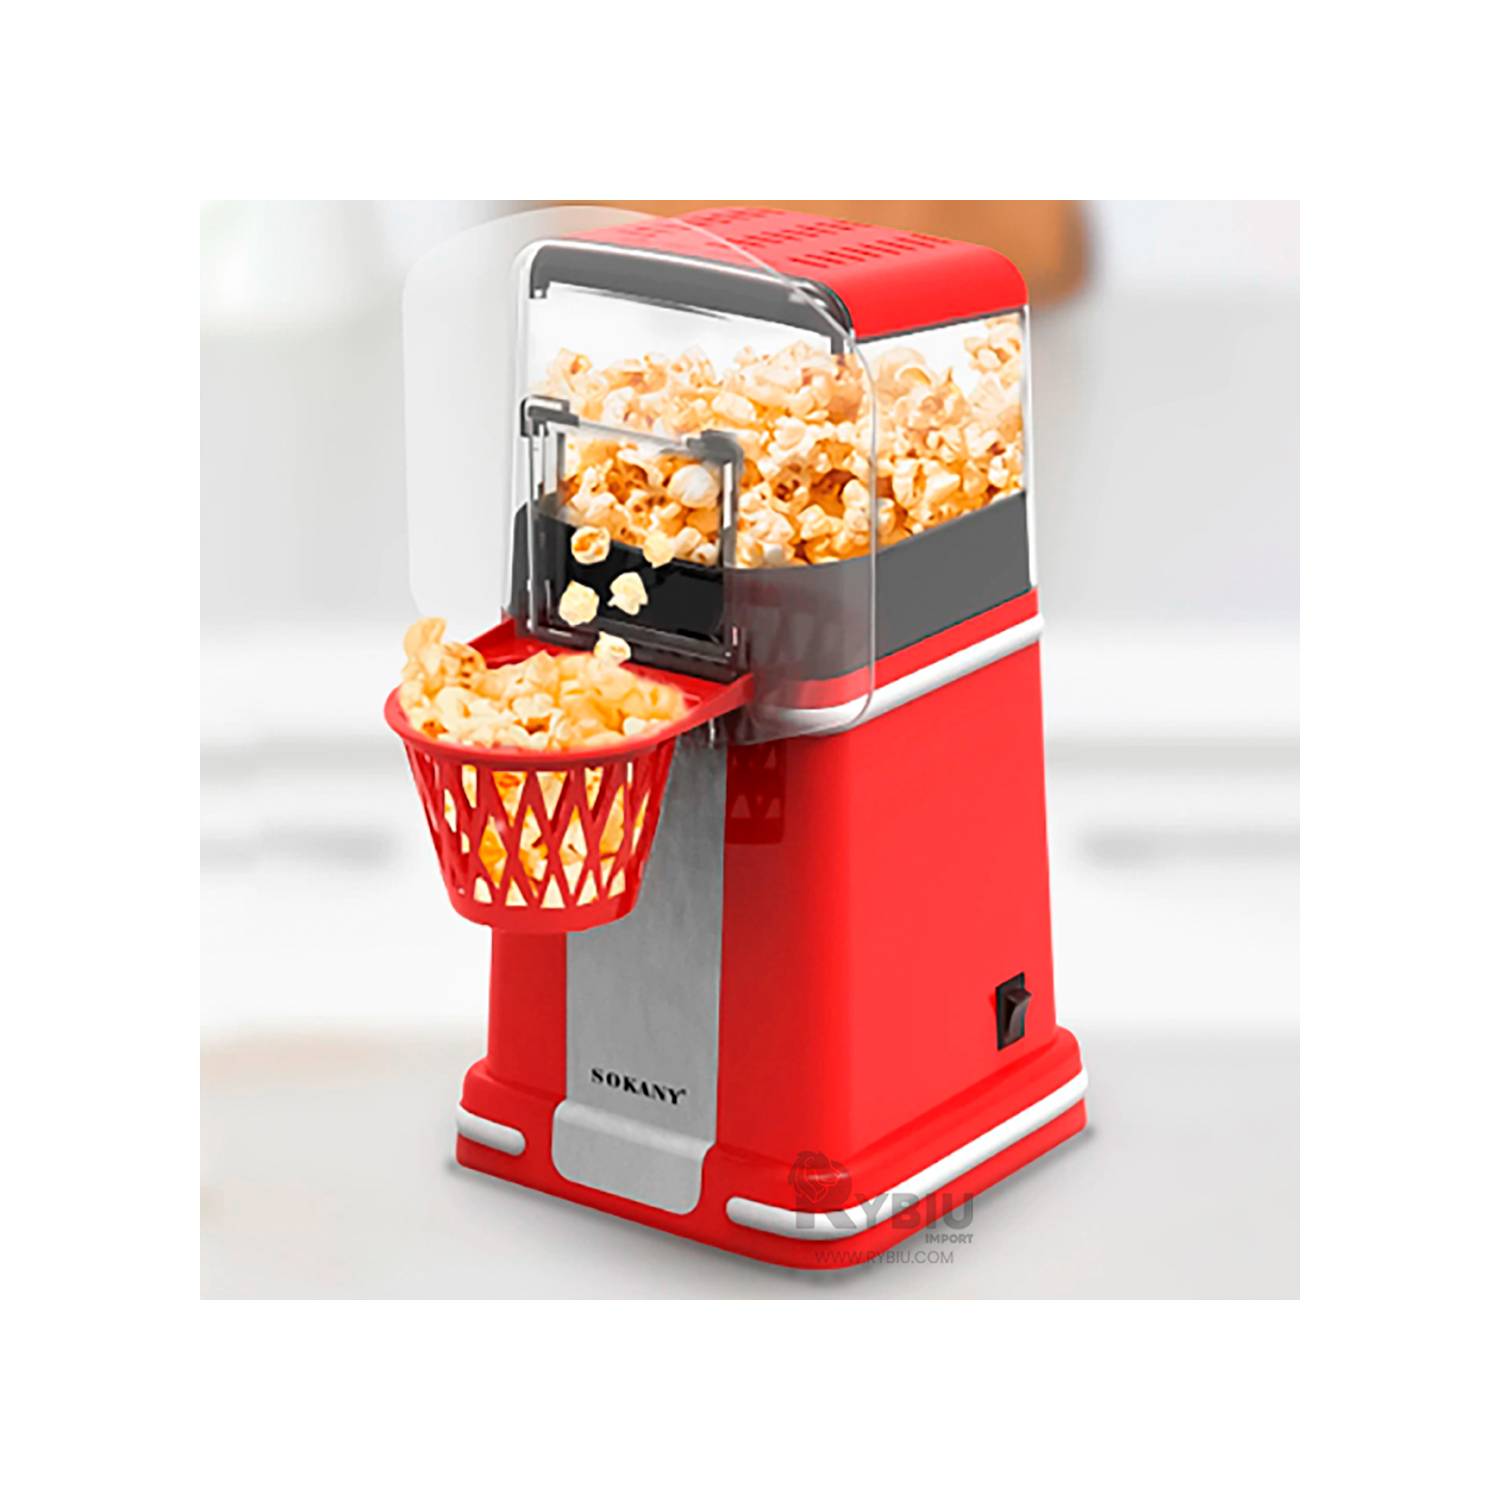 Cette machine à pop-corn va ravir tous les fans de basketball !